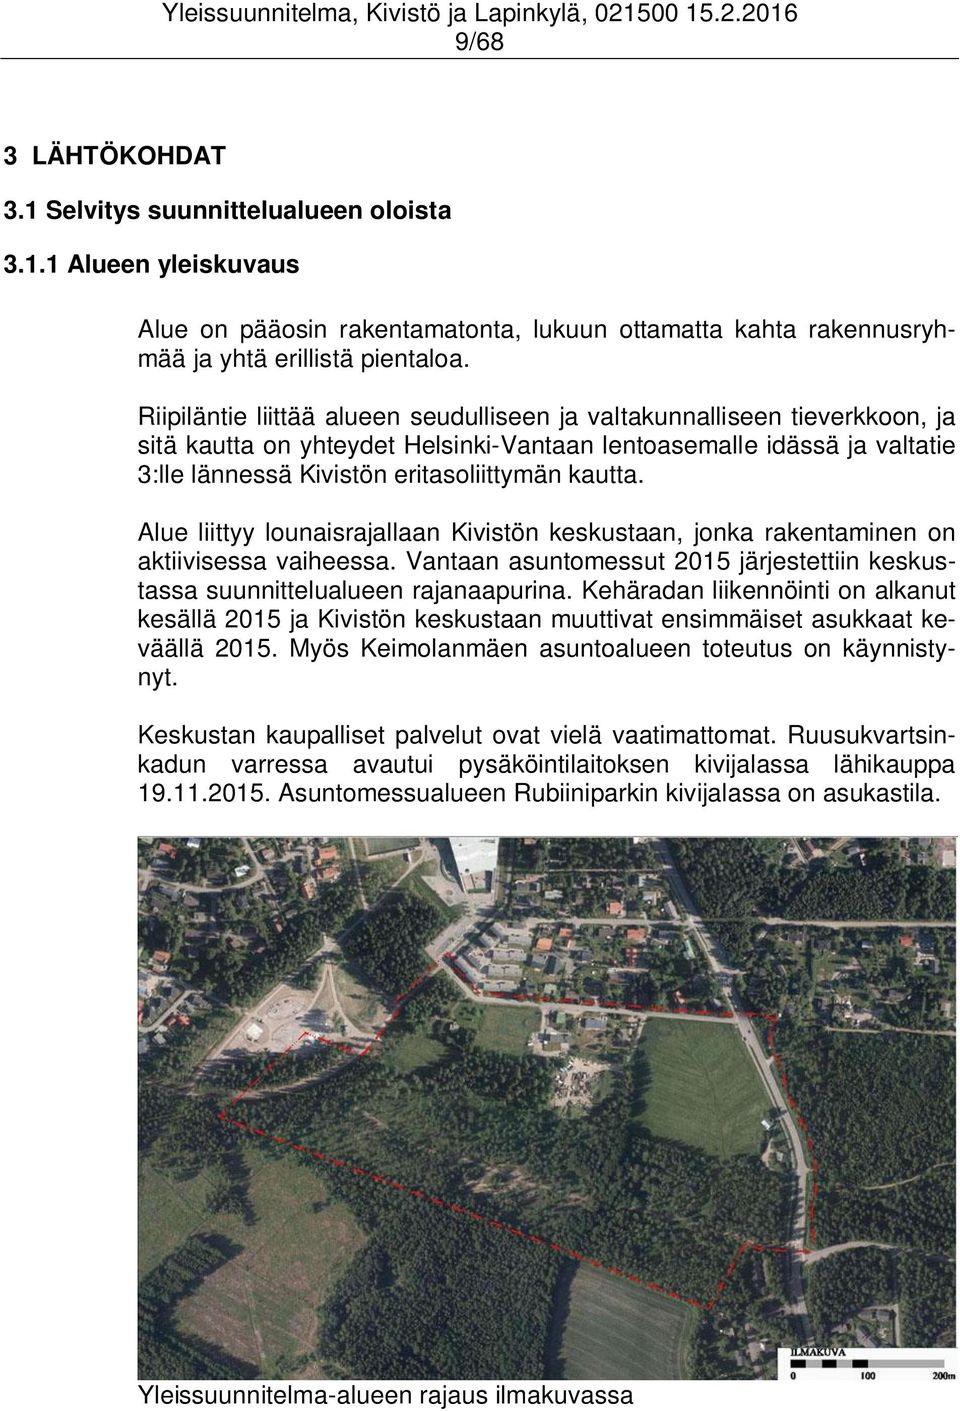 Alue liittyy lounaisrajallaan Kivistön keskustaan, jonka rakentaminen on aktiivisessa vaiheessa. Vantaan asuntomessut 2015 järjestettiin keskustassa suunnittelualueen rajanaapurina.